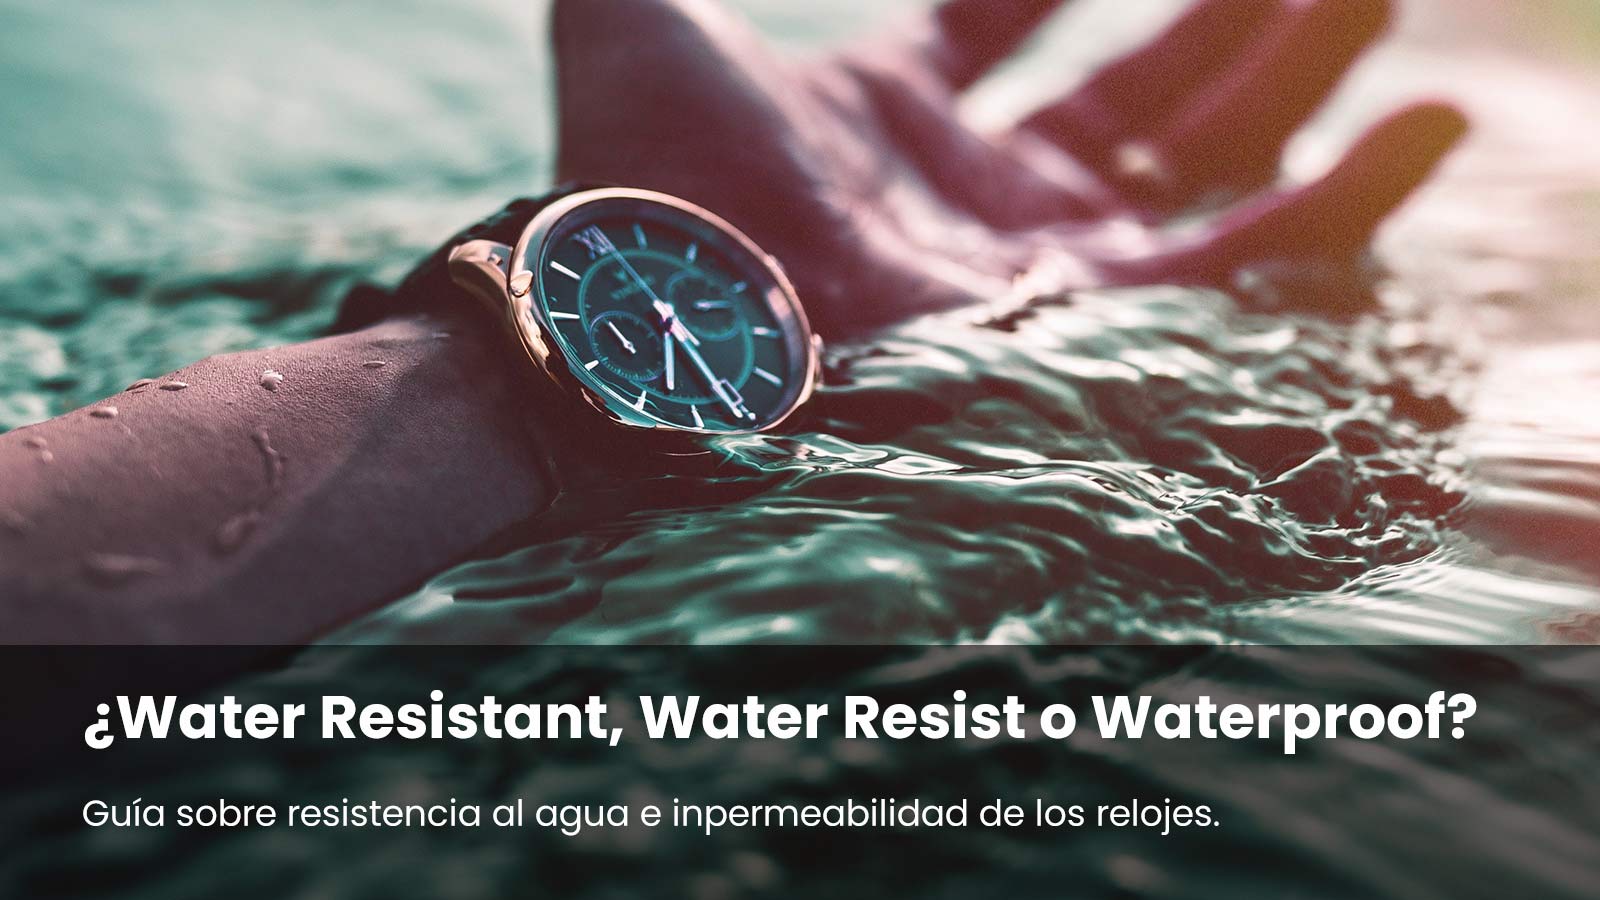 Relojes Water Resistant. Guía sobre resistencia al agua e impermeabilidad  de los relojes.